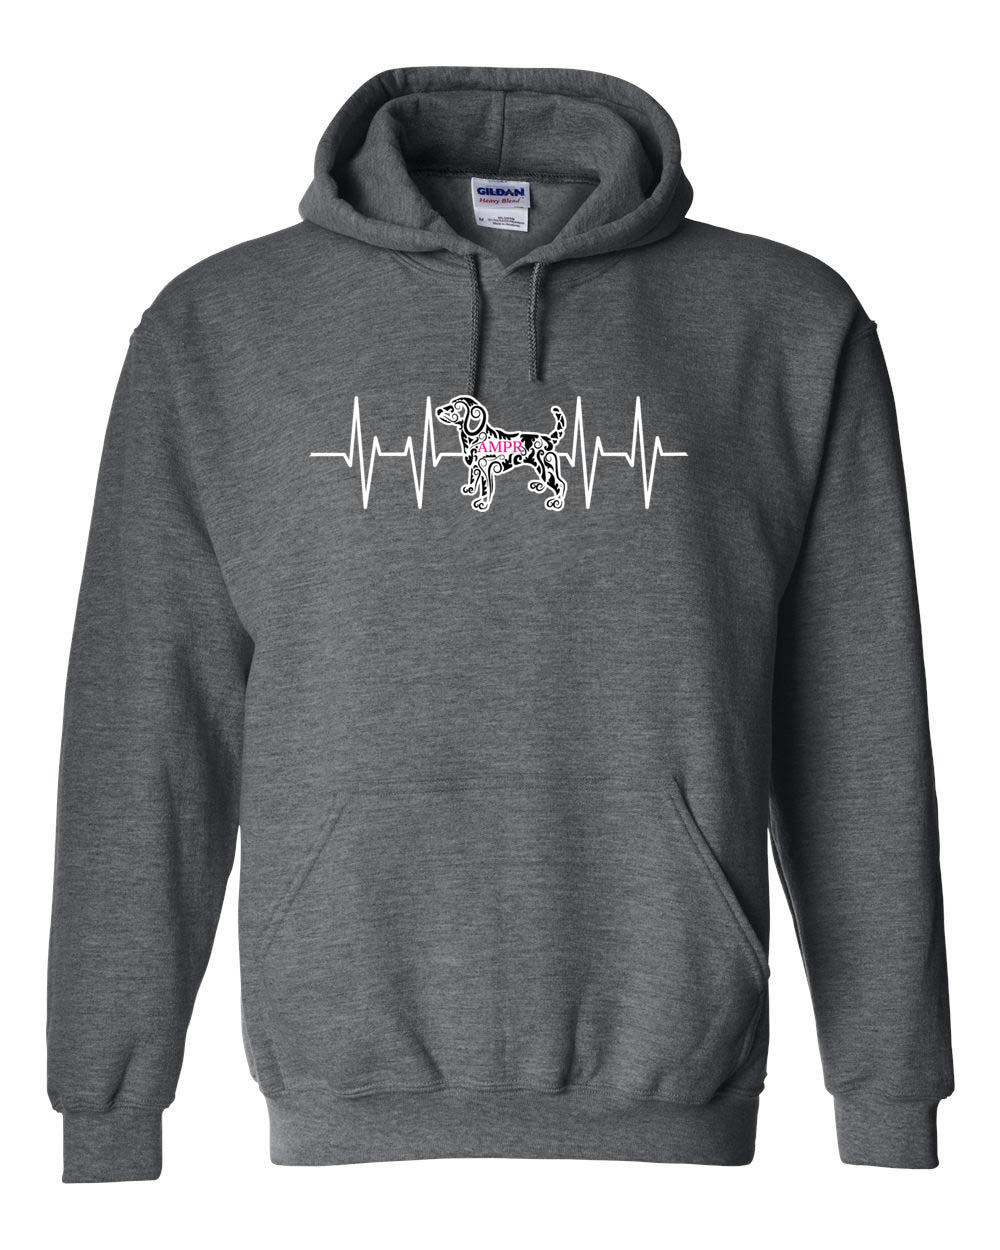 AMPR  Heartbeat Hooded Sweatshirt